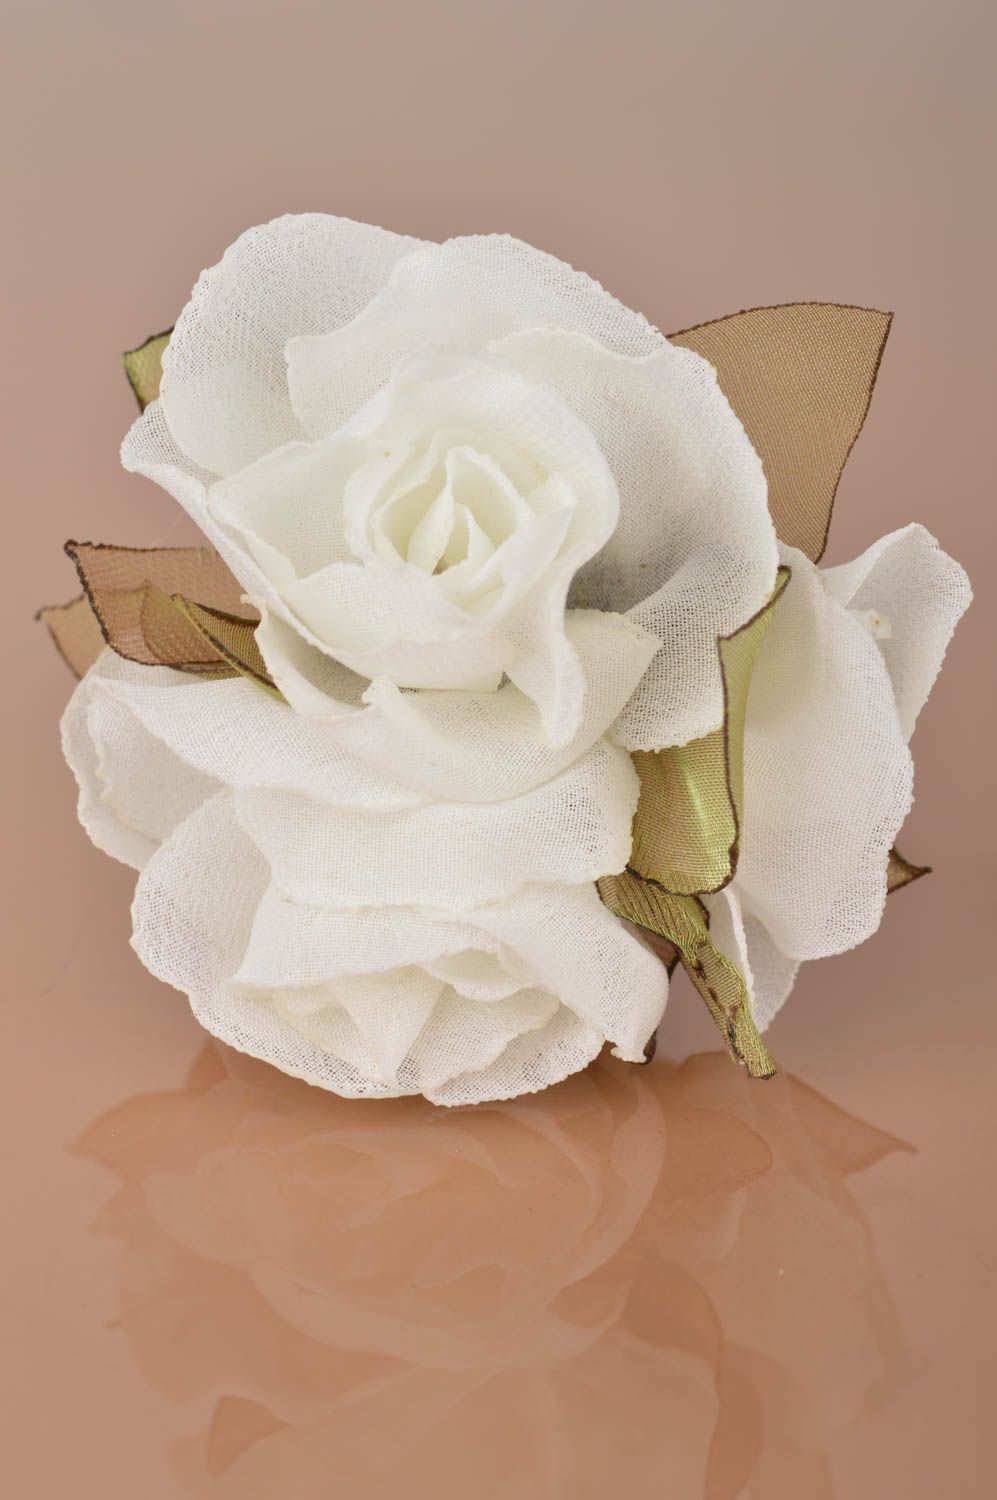 Broche artesanal pinza de pelo de tela en técnica kanzashi 3 rosas blancas foto 2